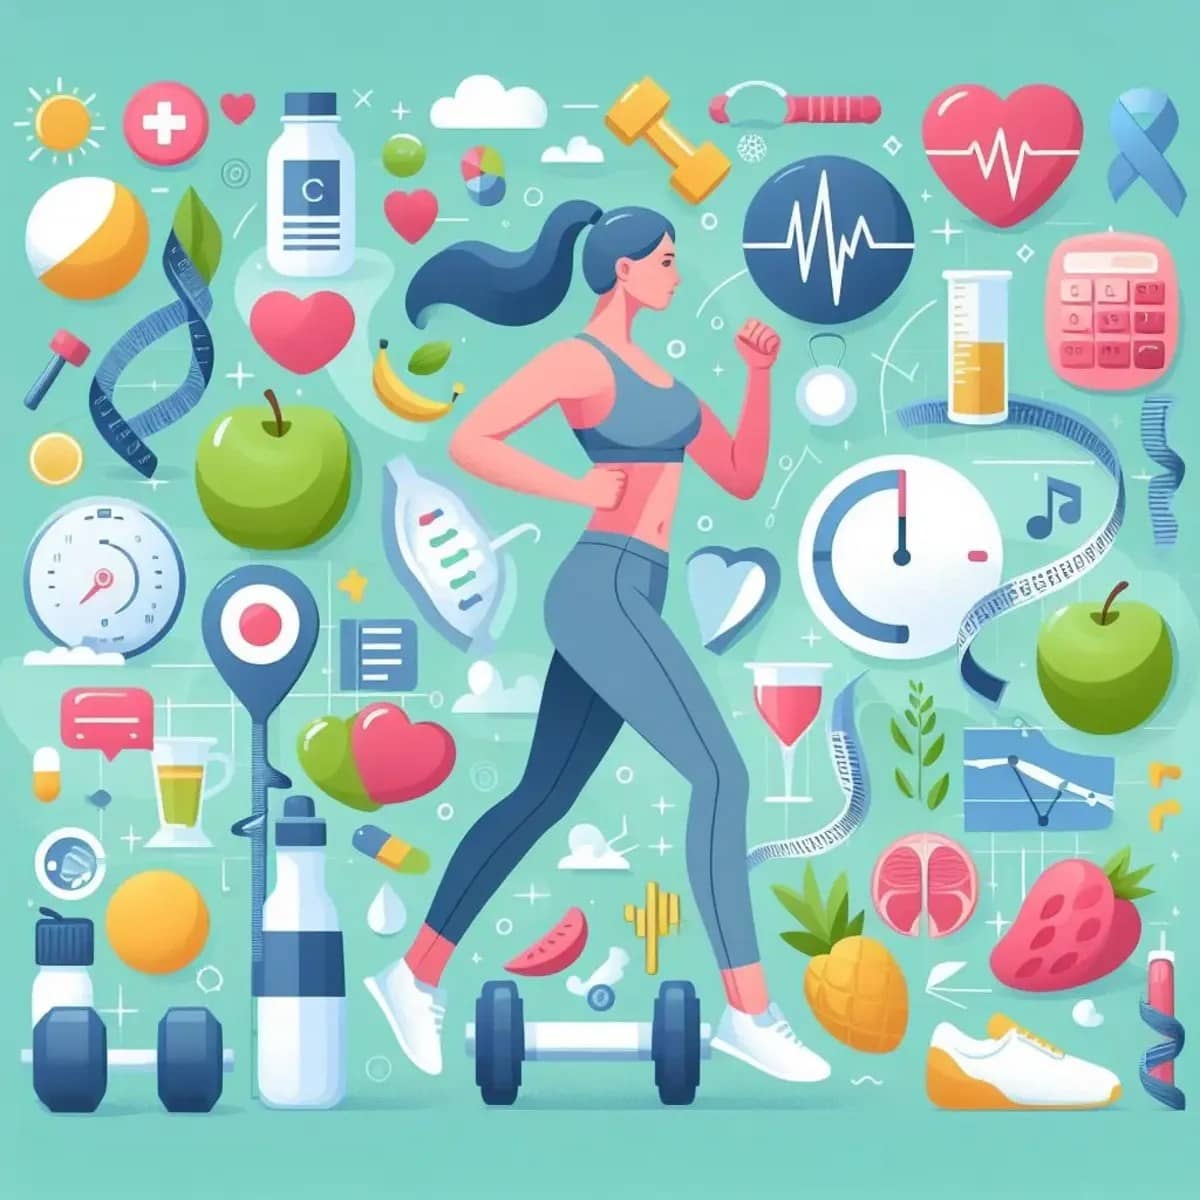 स्वास्थ्य और तंदुरुस्ती के टिप्स (Health and fitness tips) : एक स्वस्थ जीवन के लिए मार्गदर्शन